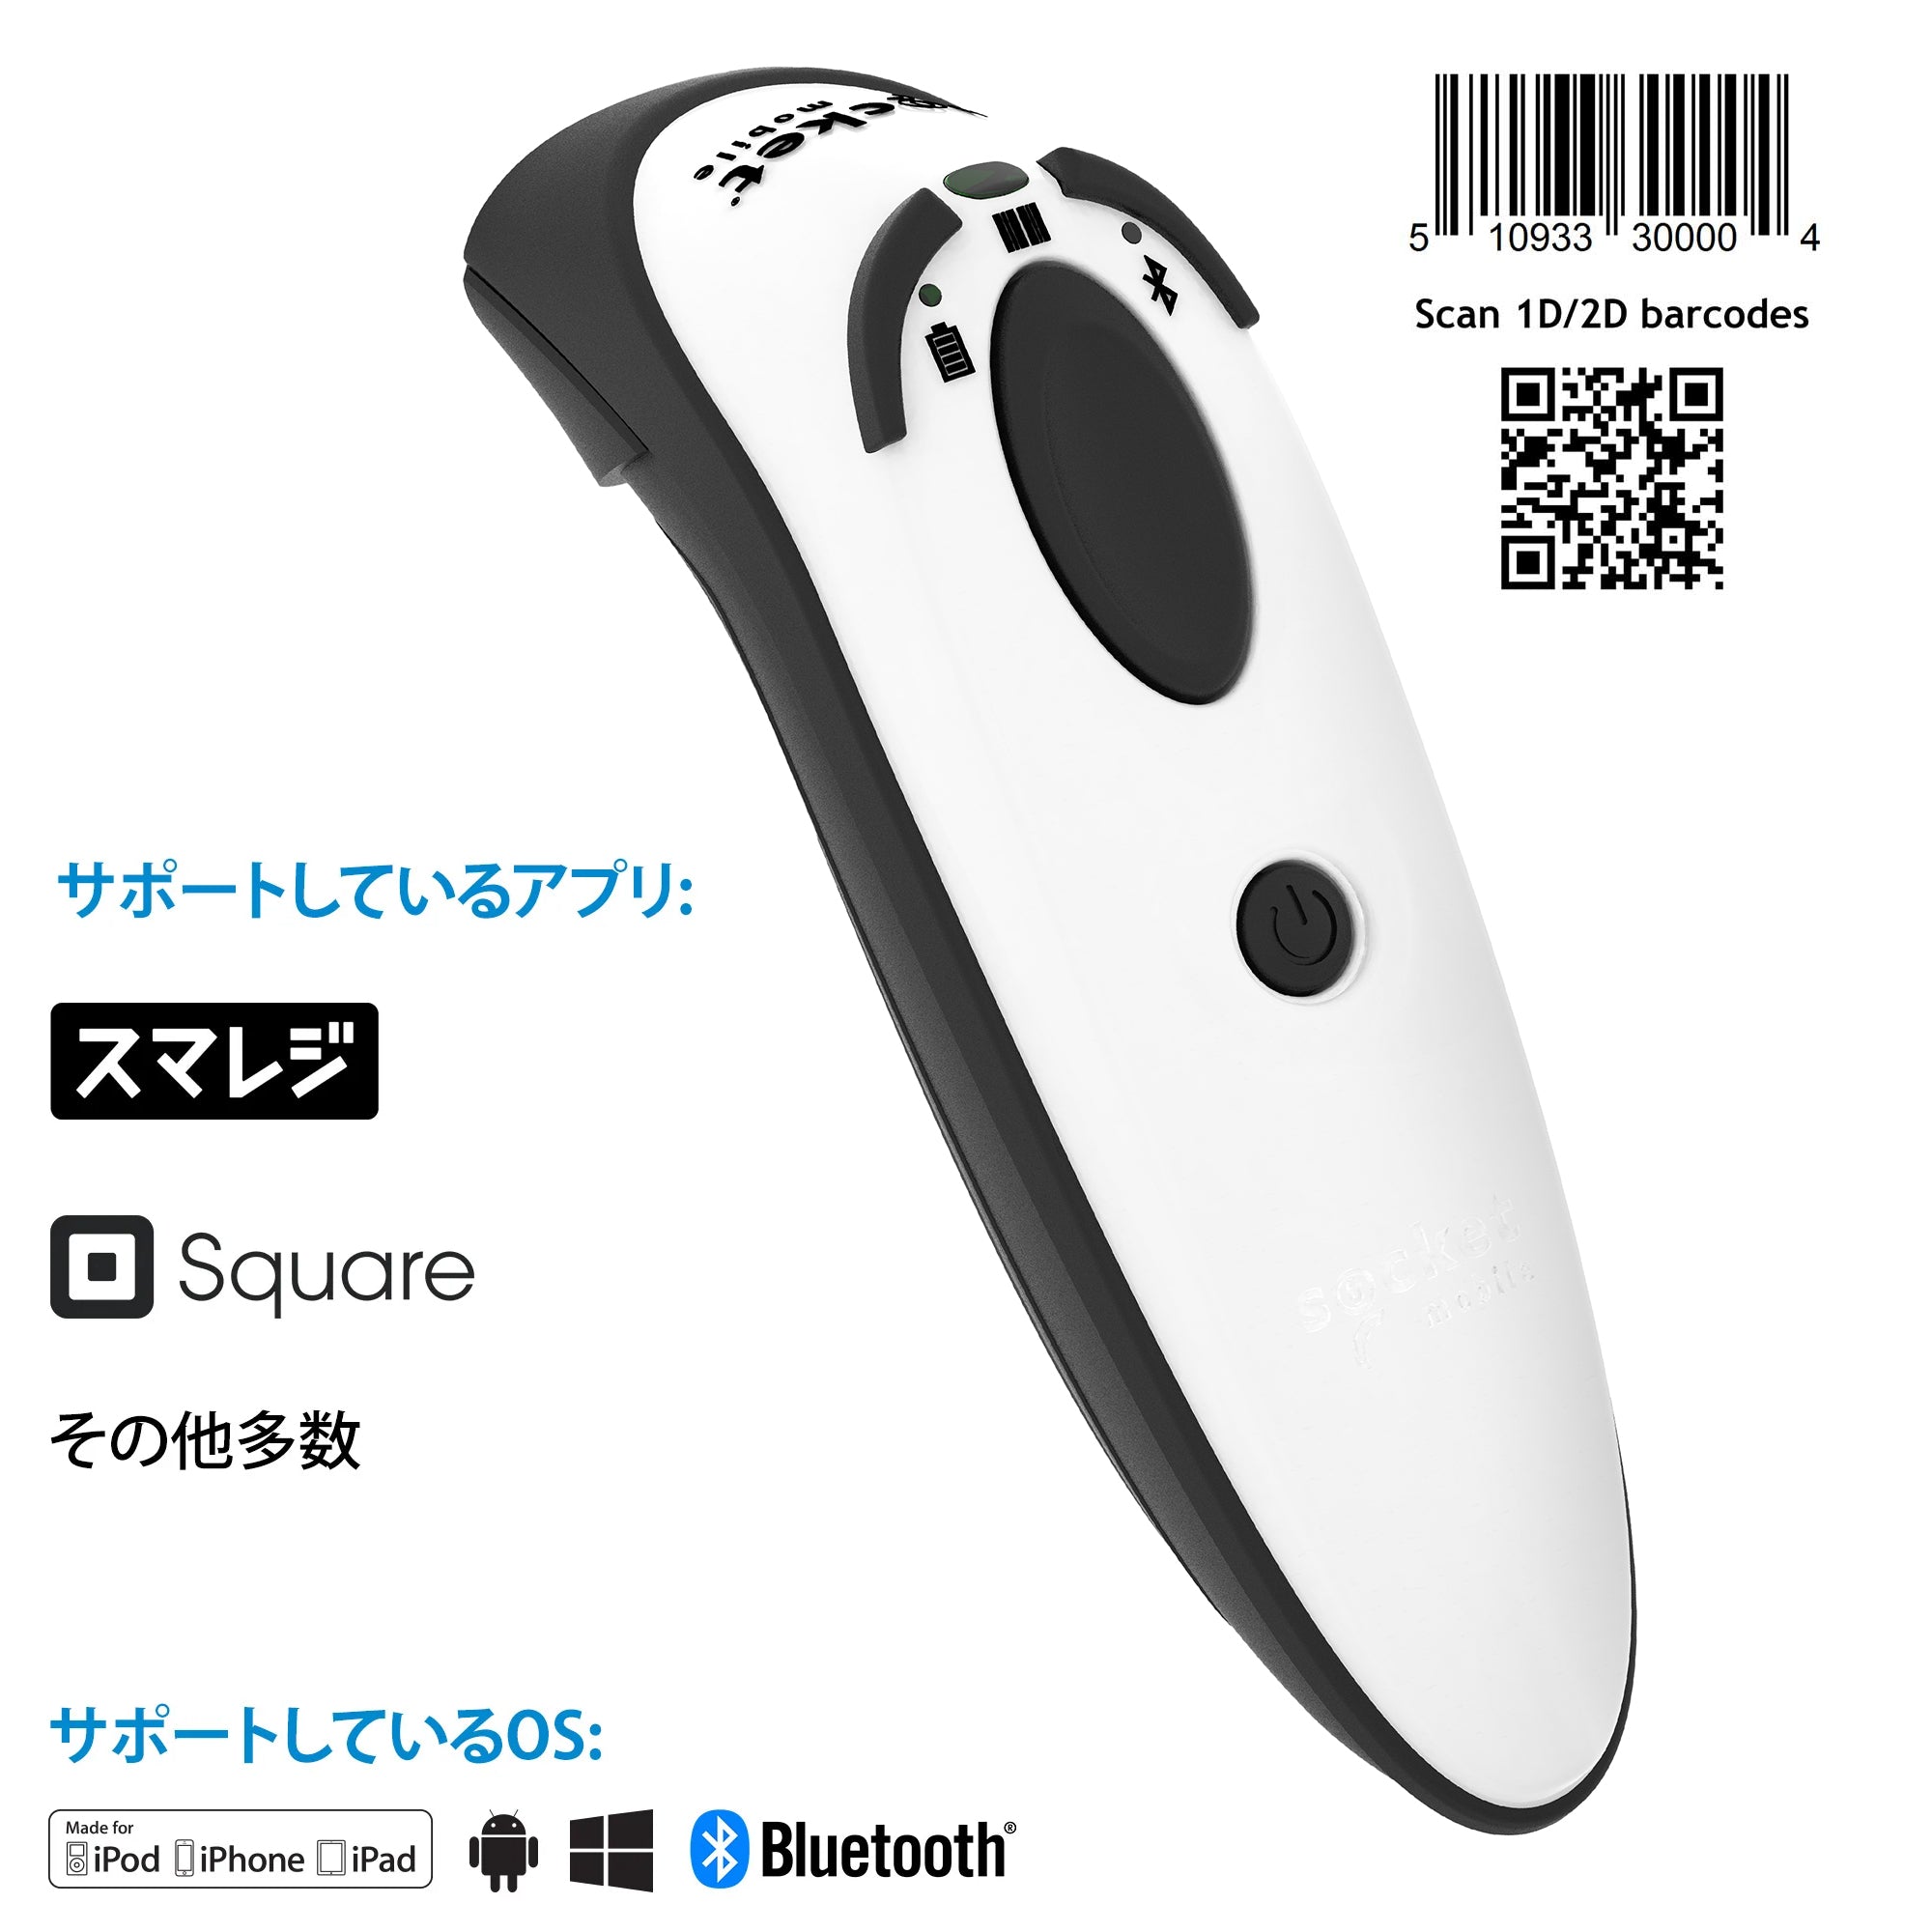 DuraScan D720 – Socket Mobile-JP